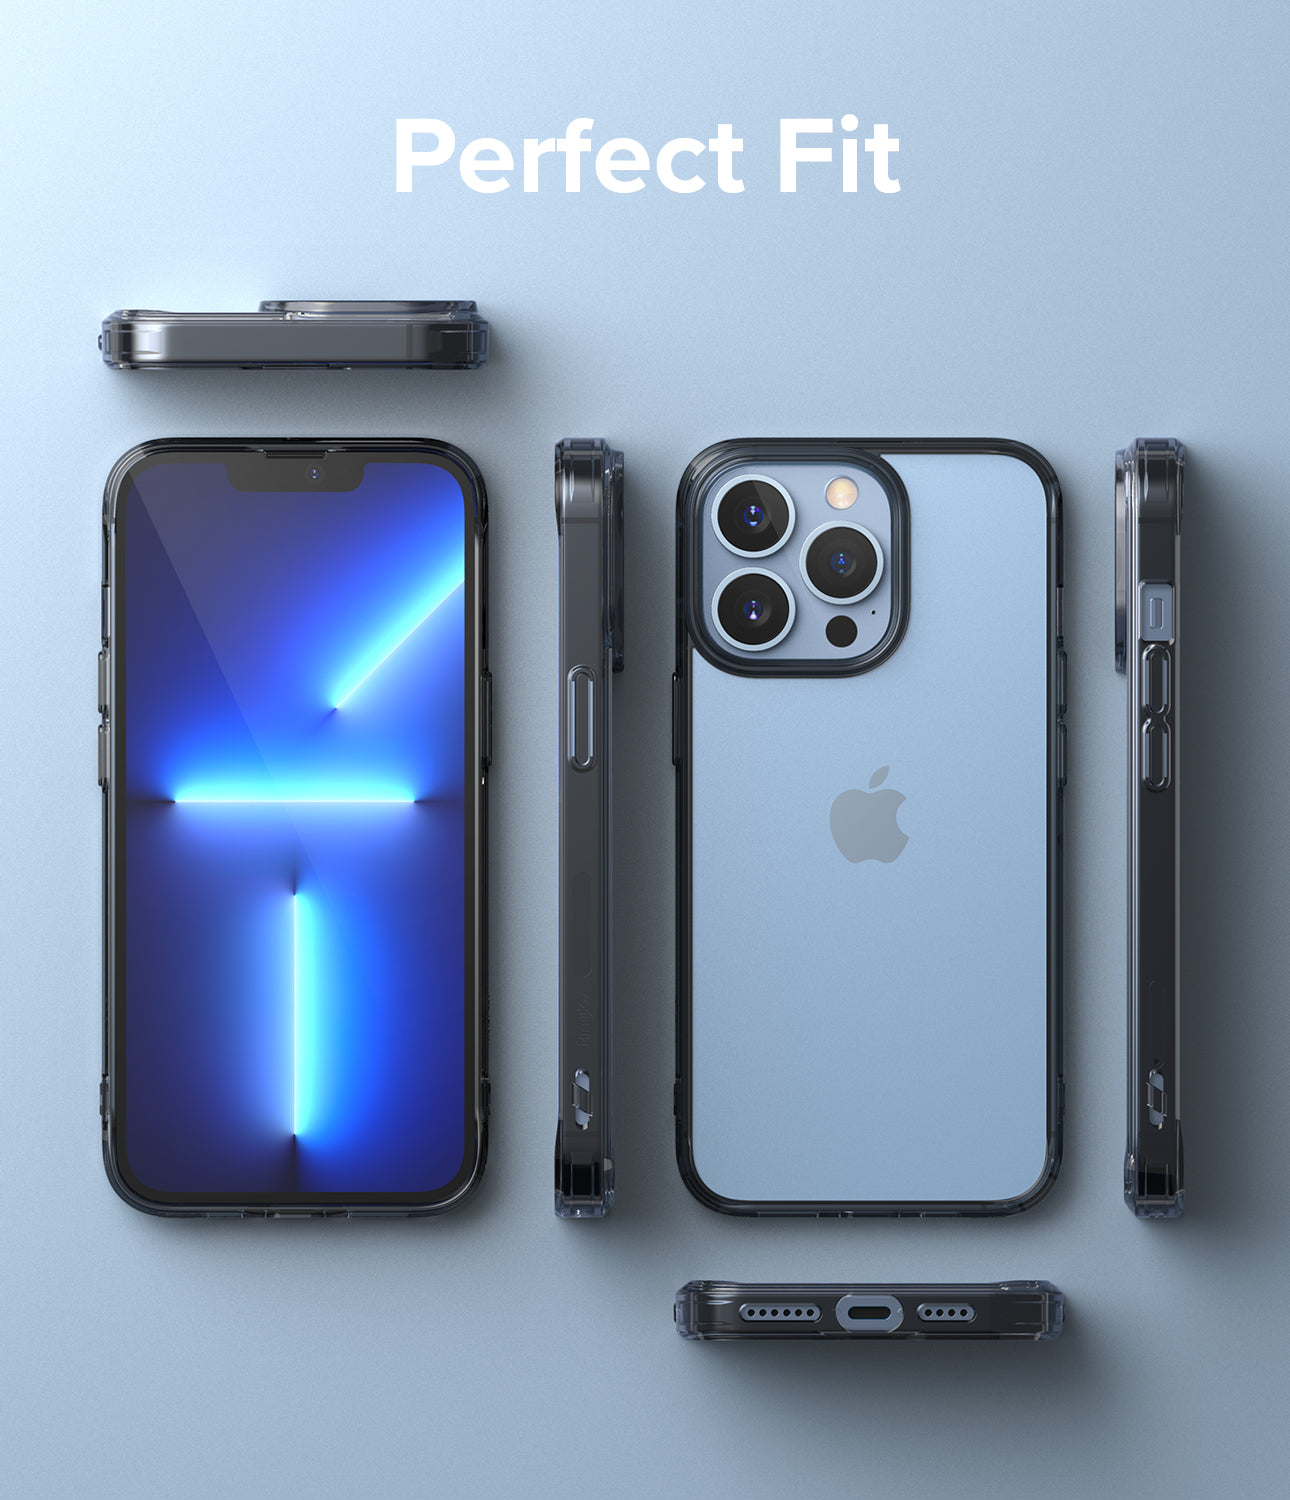 iPhone 13 Pro Max Case | Fusion